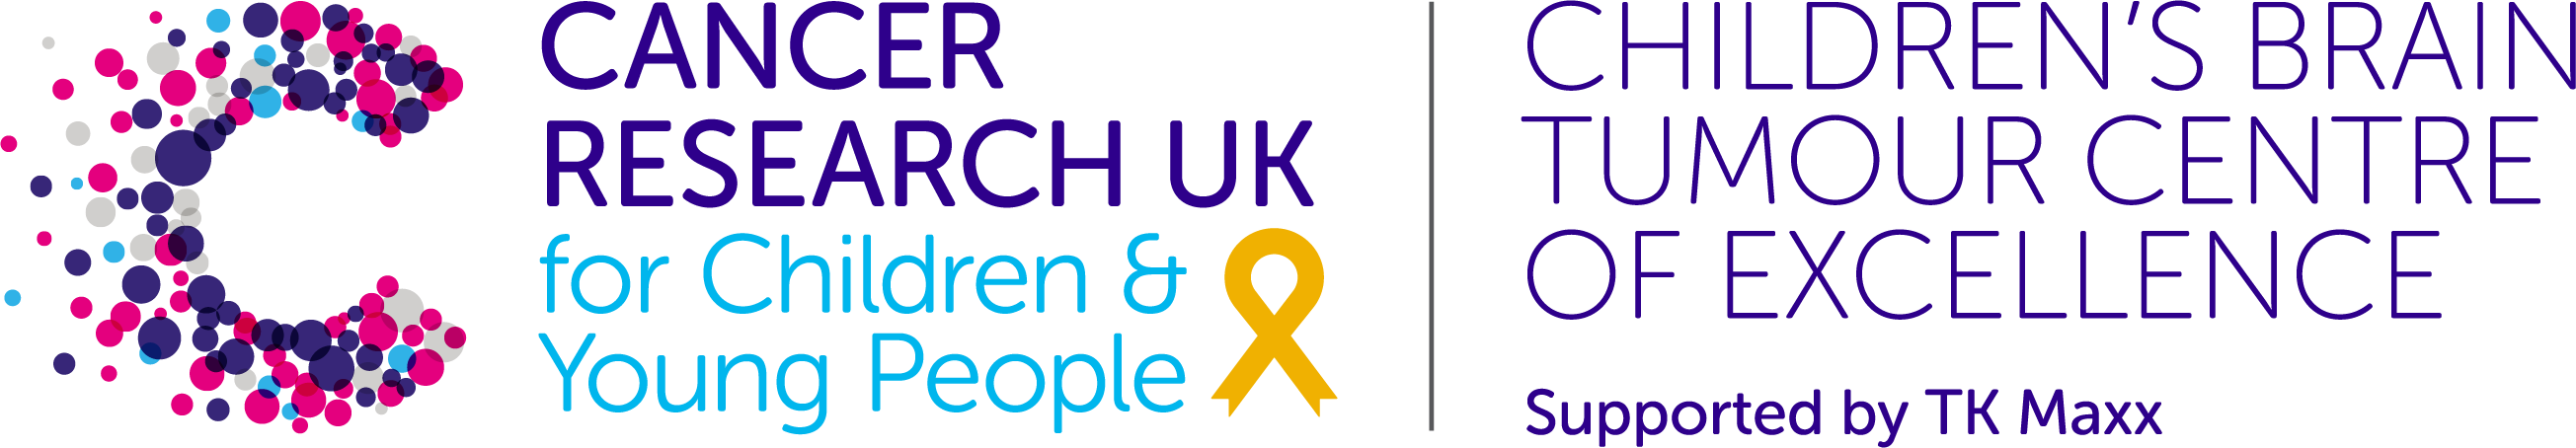 CRUK Children's Brain Tumour Centre of Excellence logo.